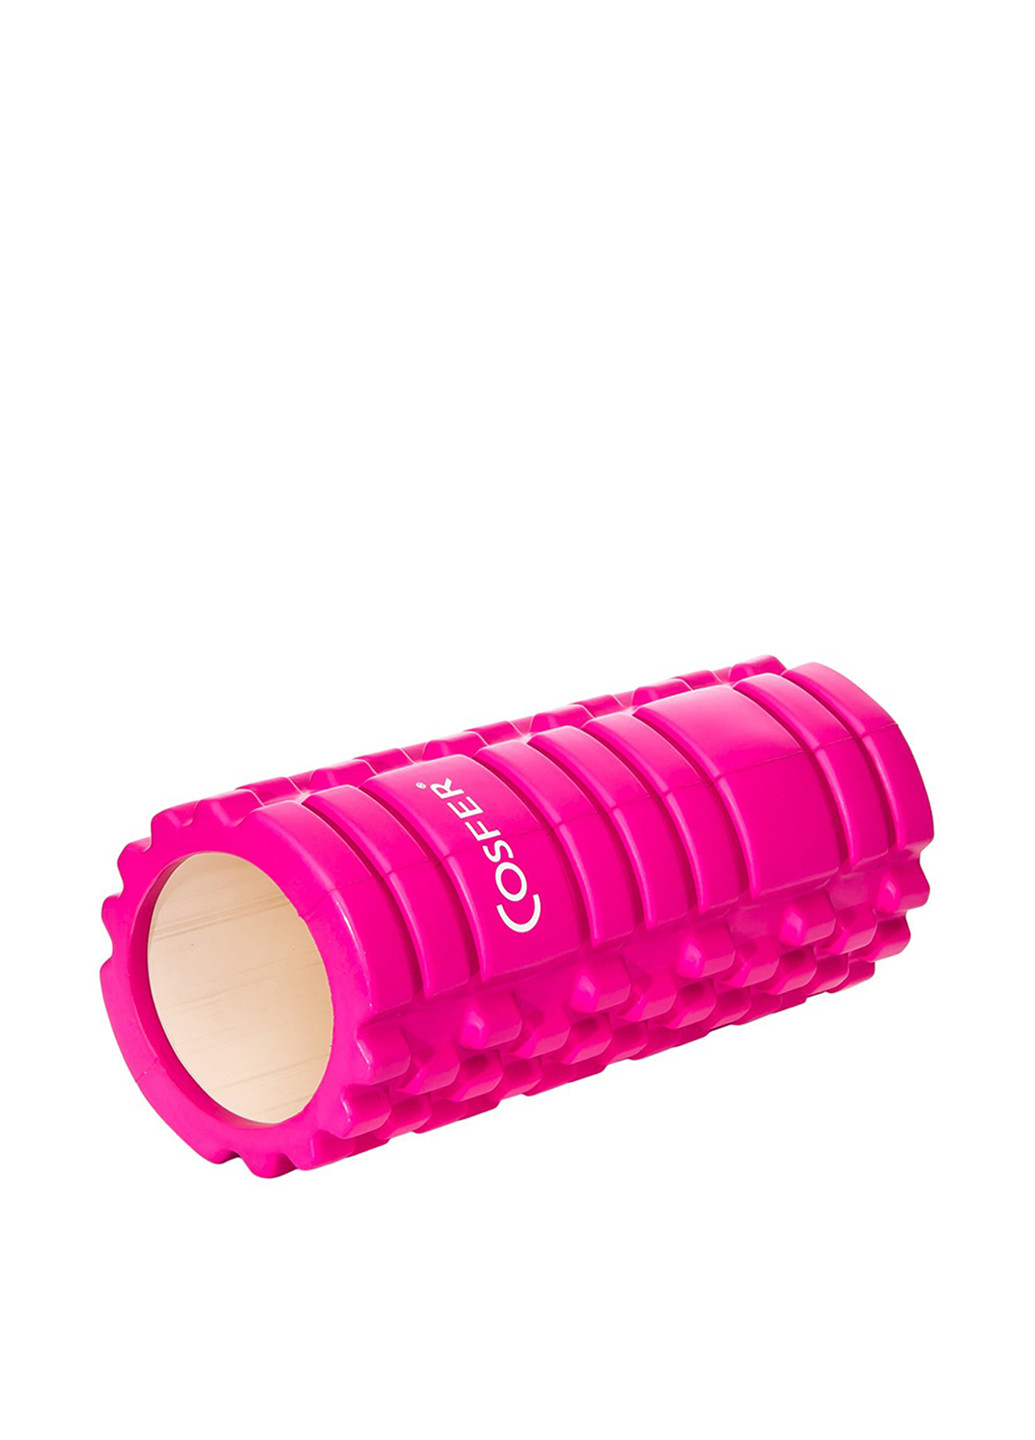 Ролик для йоги, 33х14 см Cosfer логотип розовый